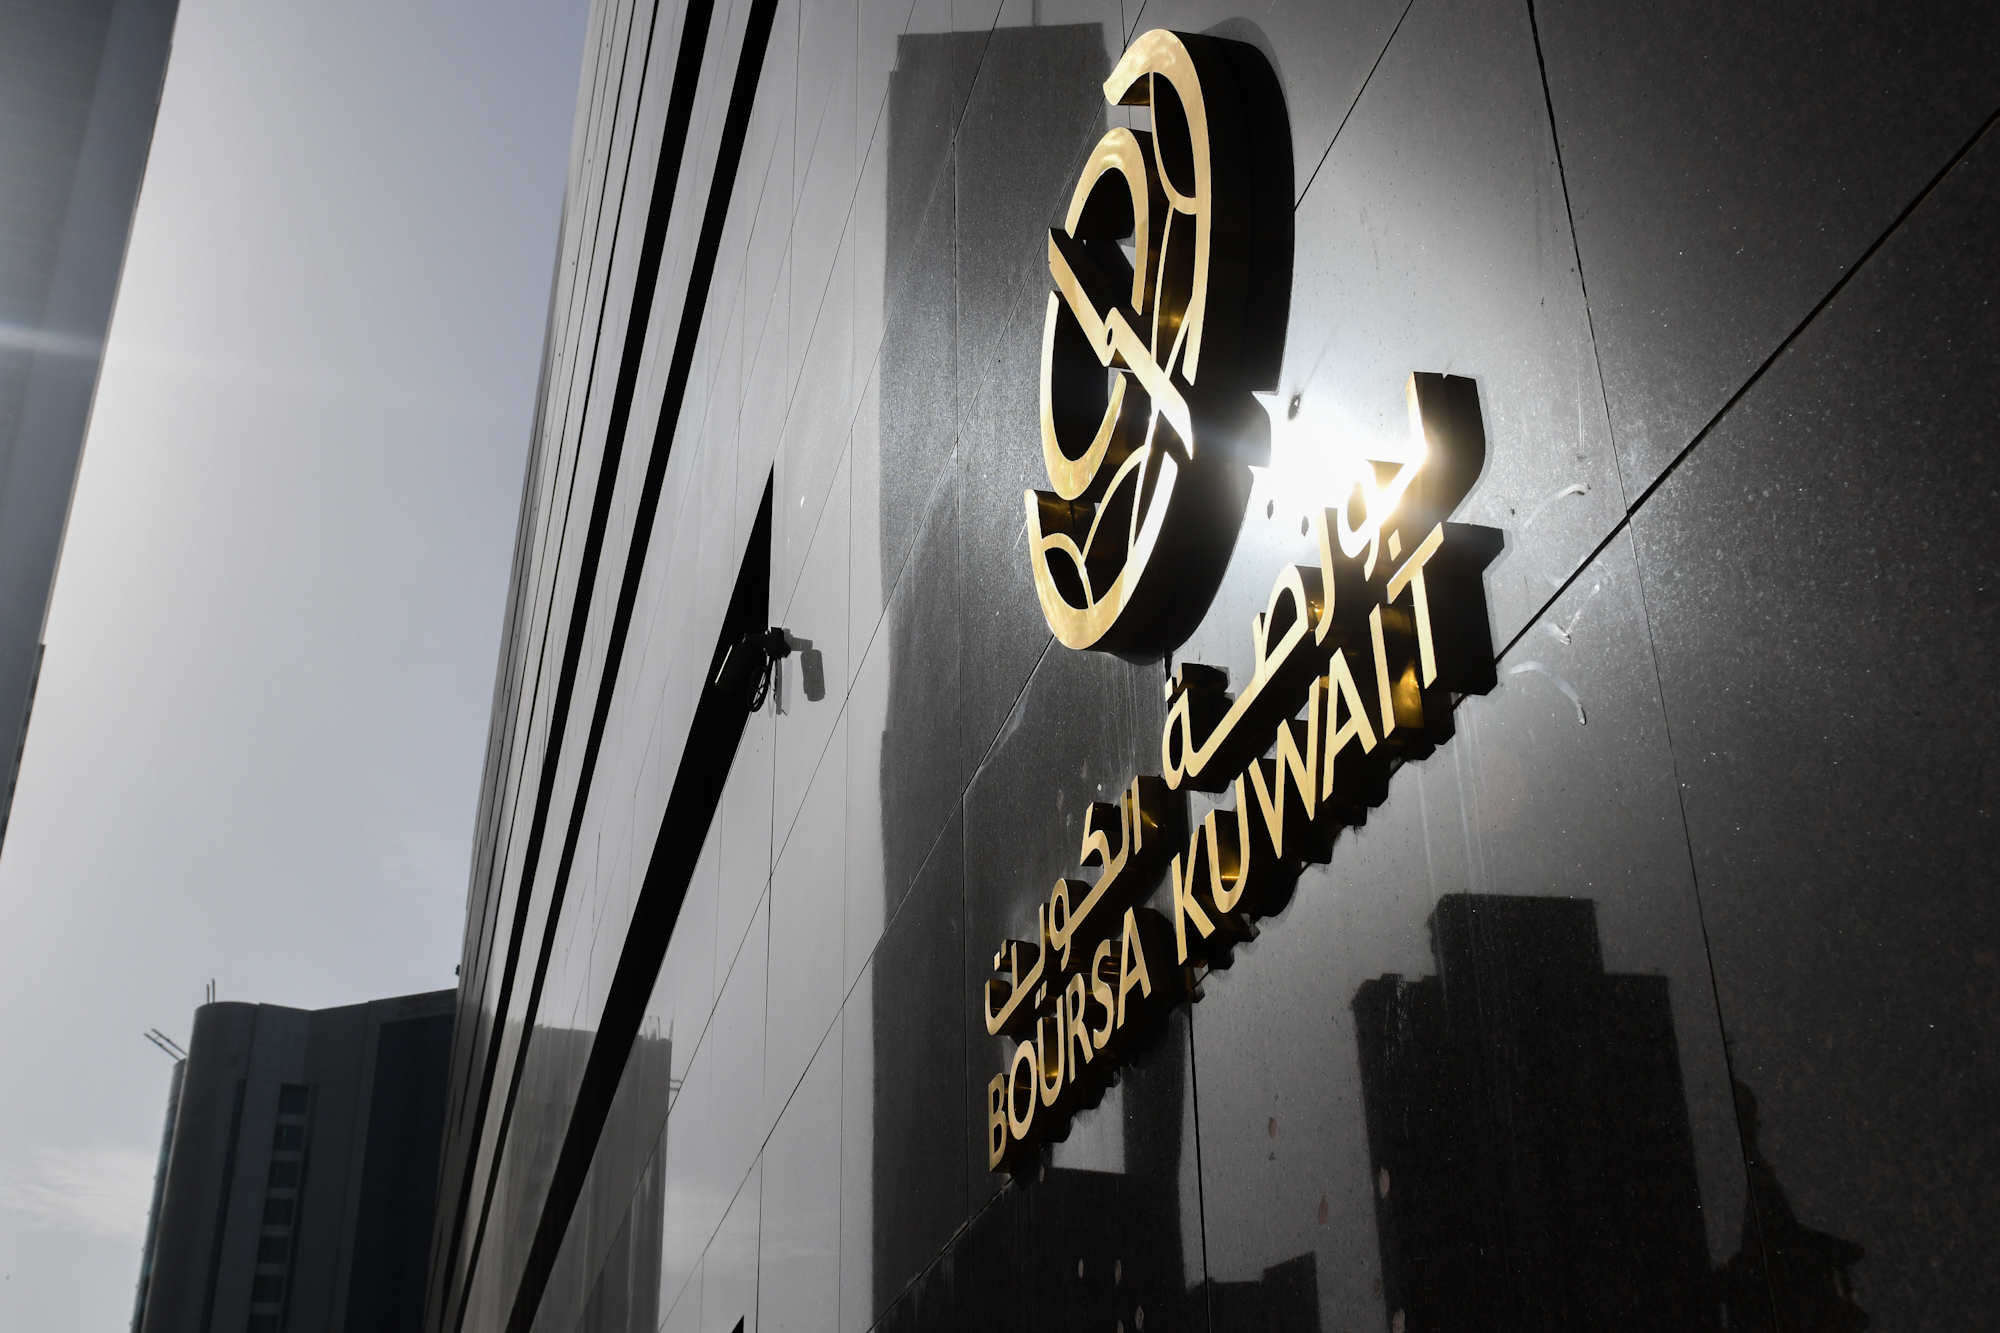 بورصة الكويت تغلق تعاملاتها على انخفاض مؤشرها العام 4ر15 نقطة ليبلغ 12ر7292 بنسبة 21ر0 في المئة                                                                                                                                                           